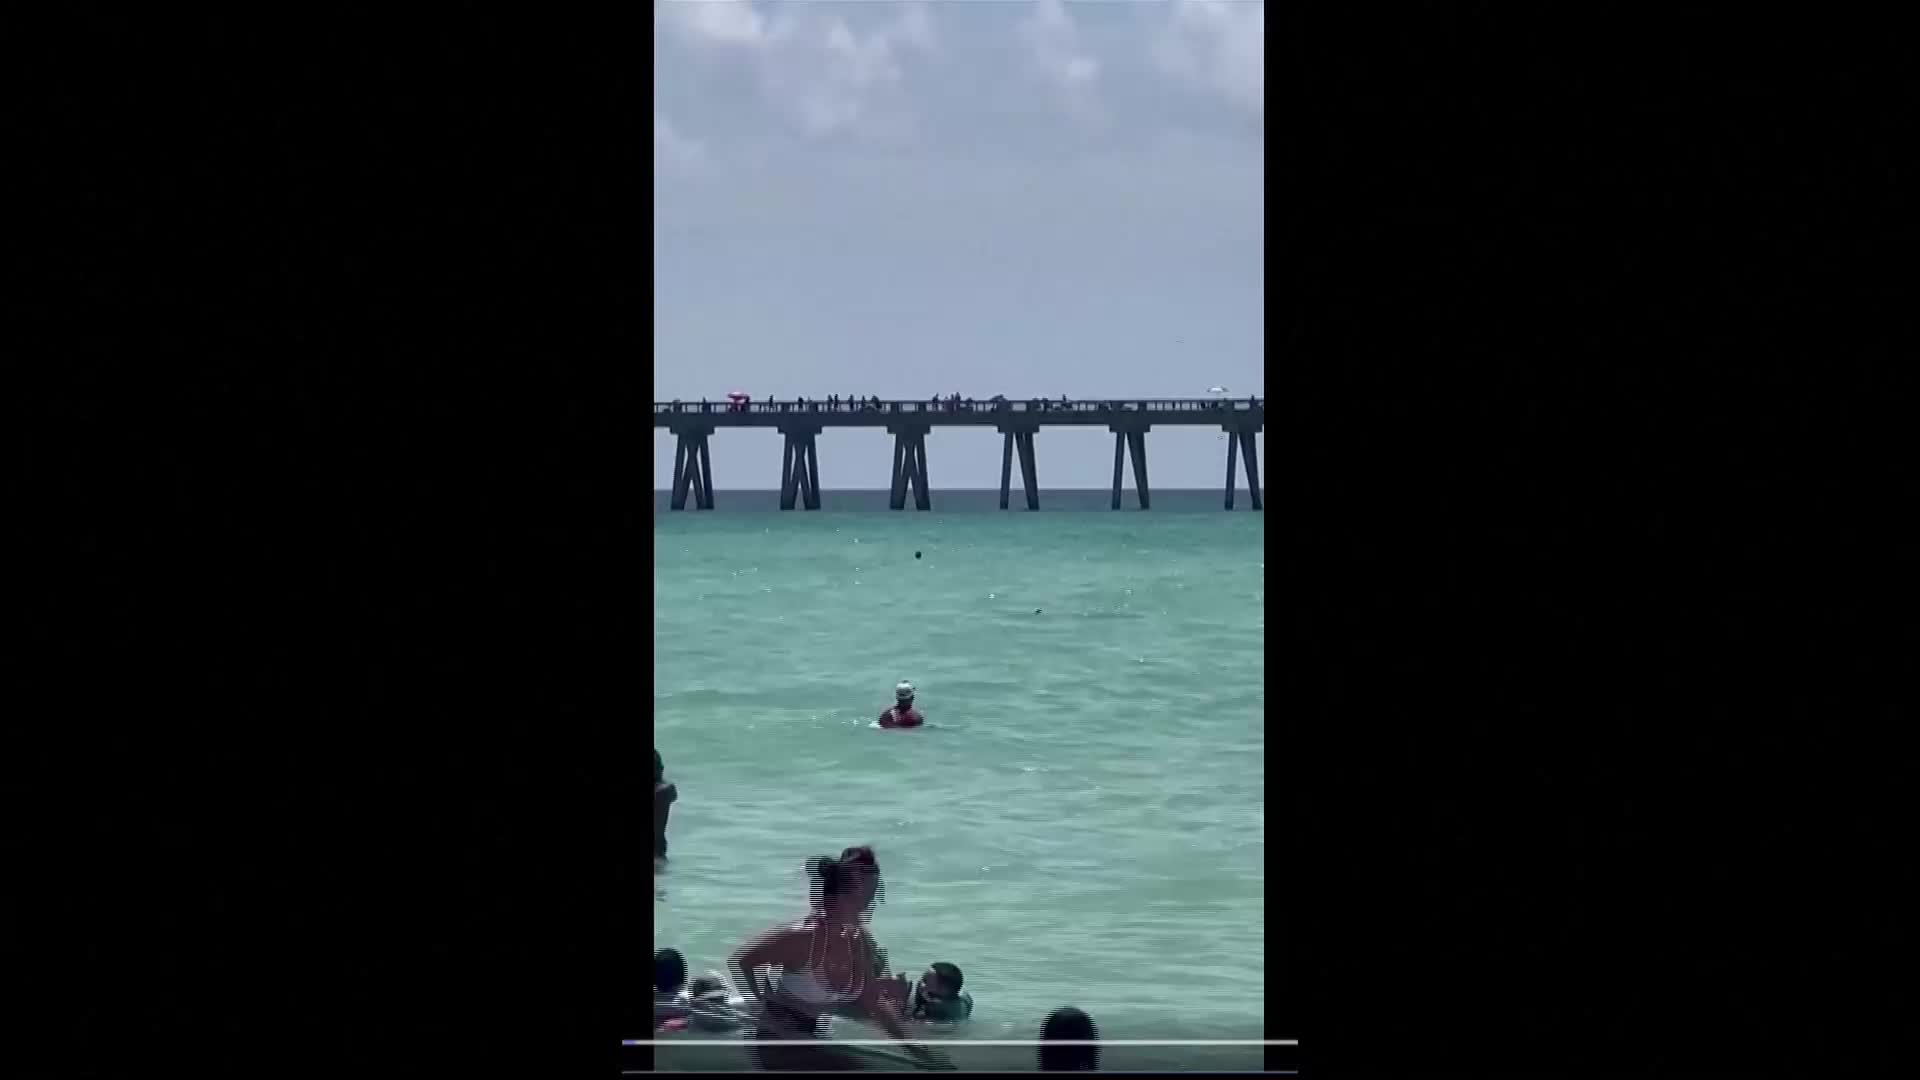 Акула се появи сред хората на плаж във Флорида (ВИДЕО)